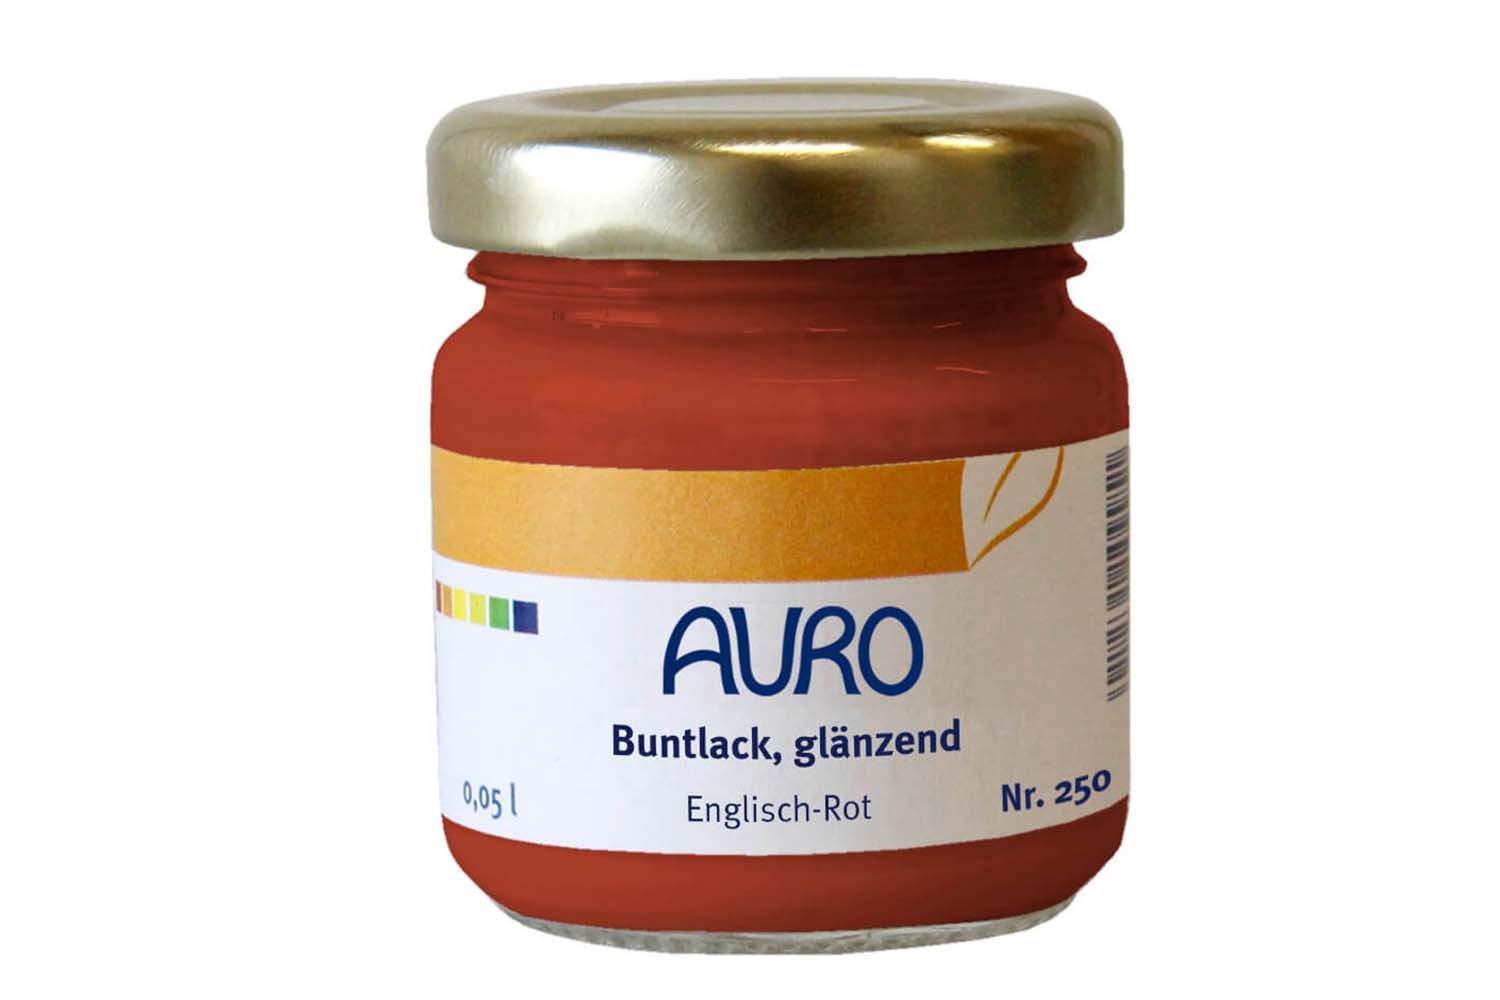 Auro Buntlack glänzend Nr. 250 - Englisch-Rot